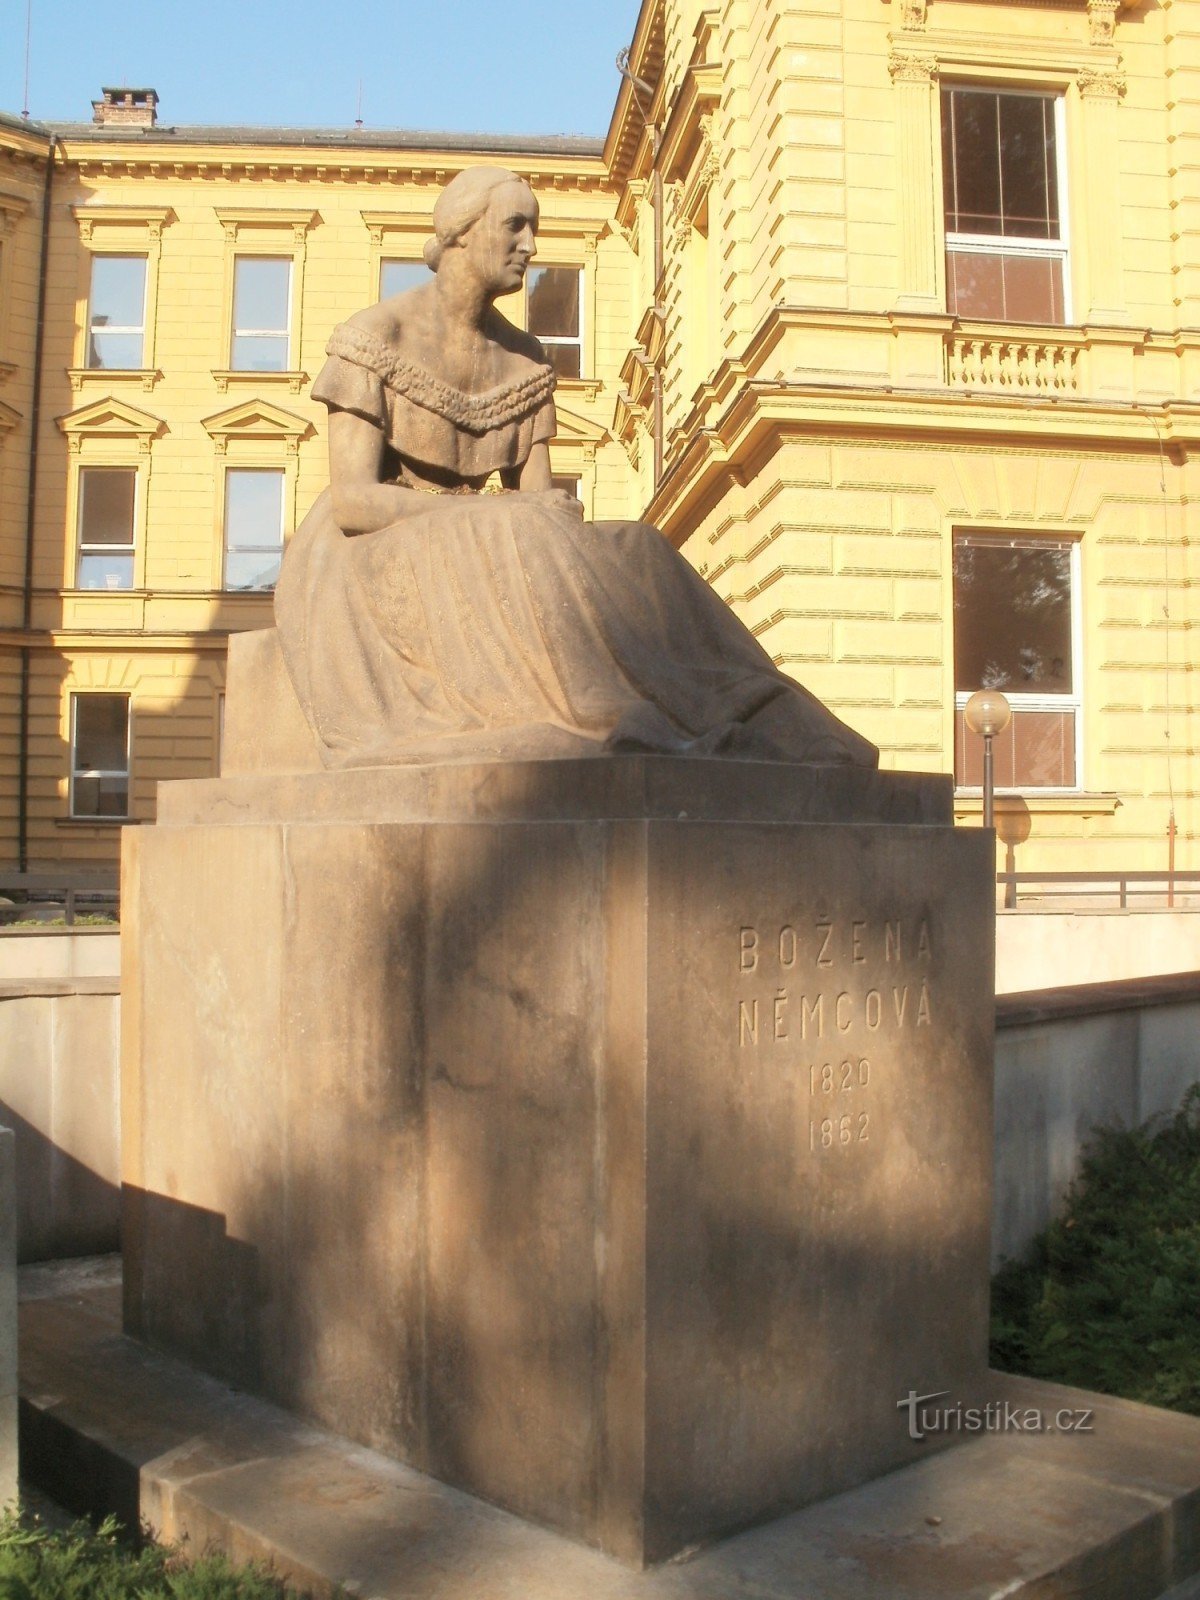 Hradec Králové - άγαλμα της Božena Němcová